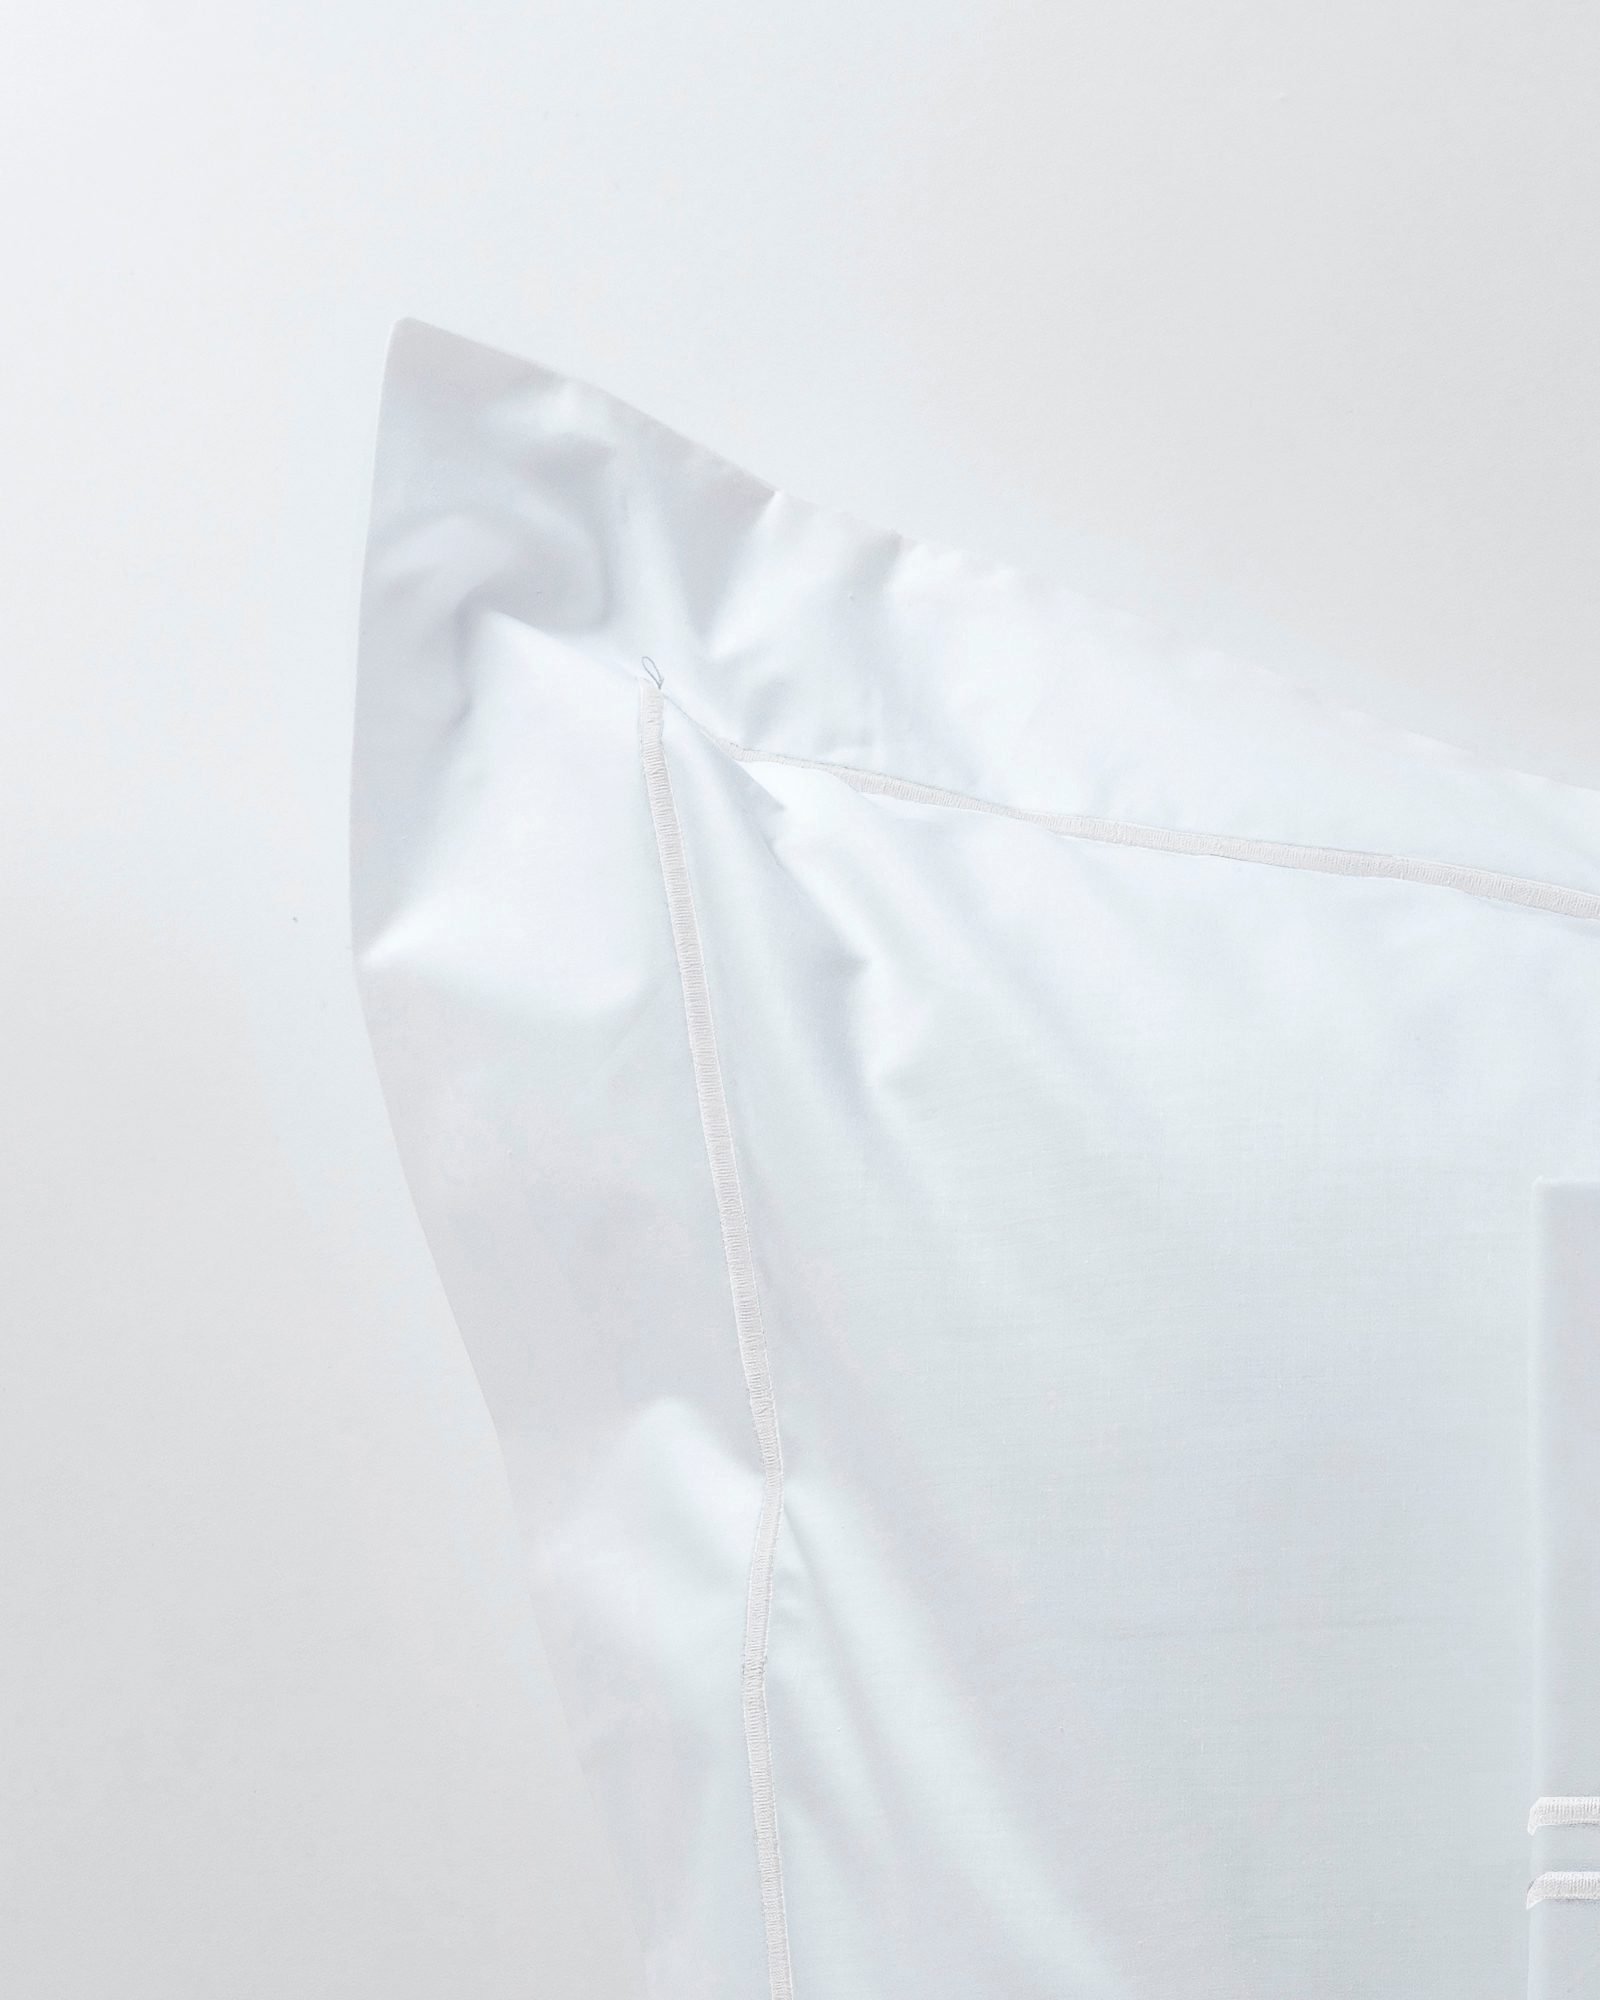 MARIE-MARIE - Pillowcase OXFORD - 50x75 cm - White